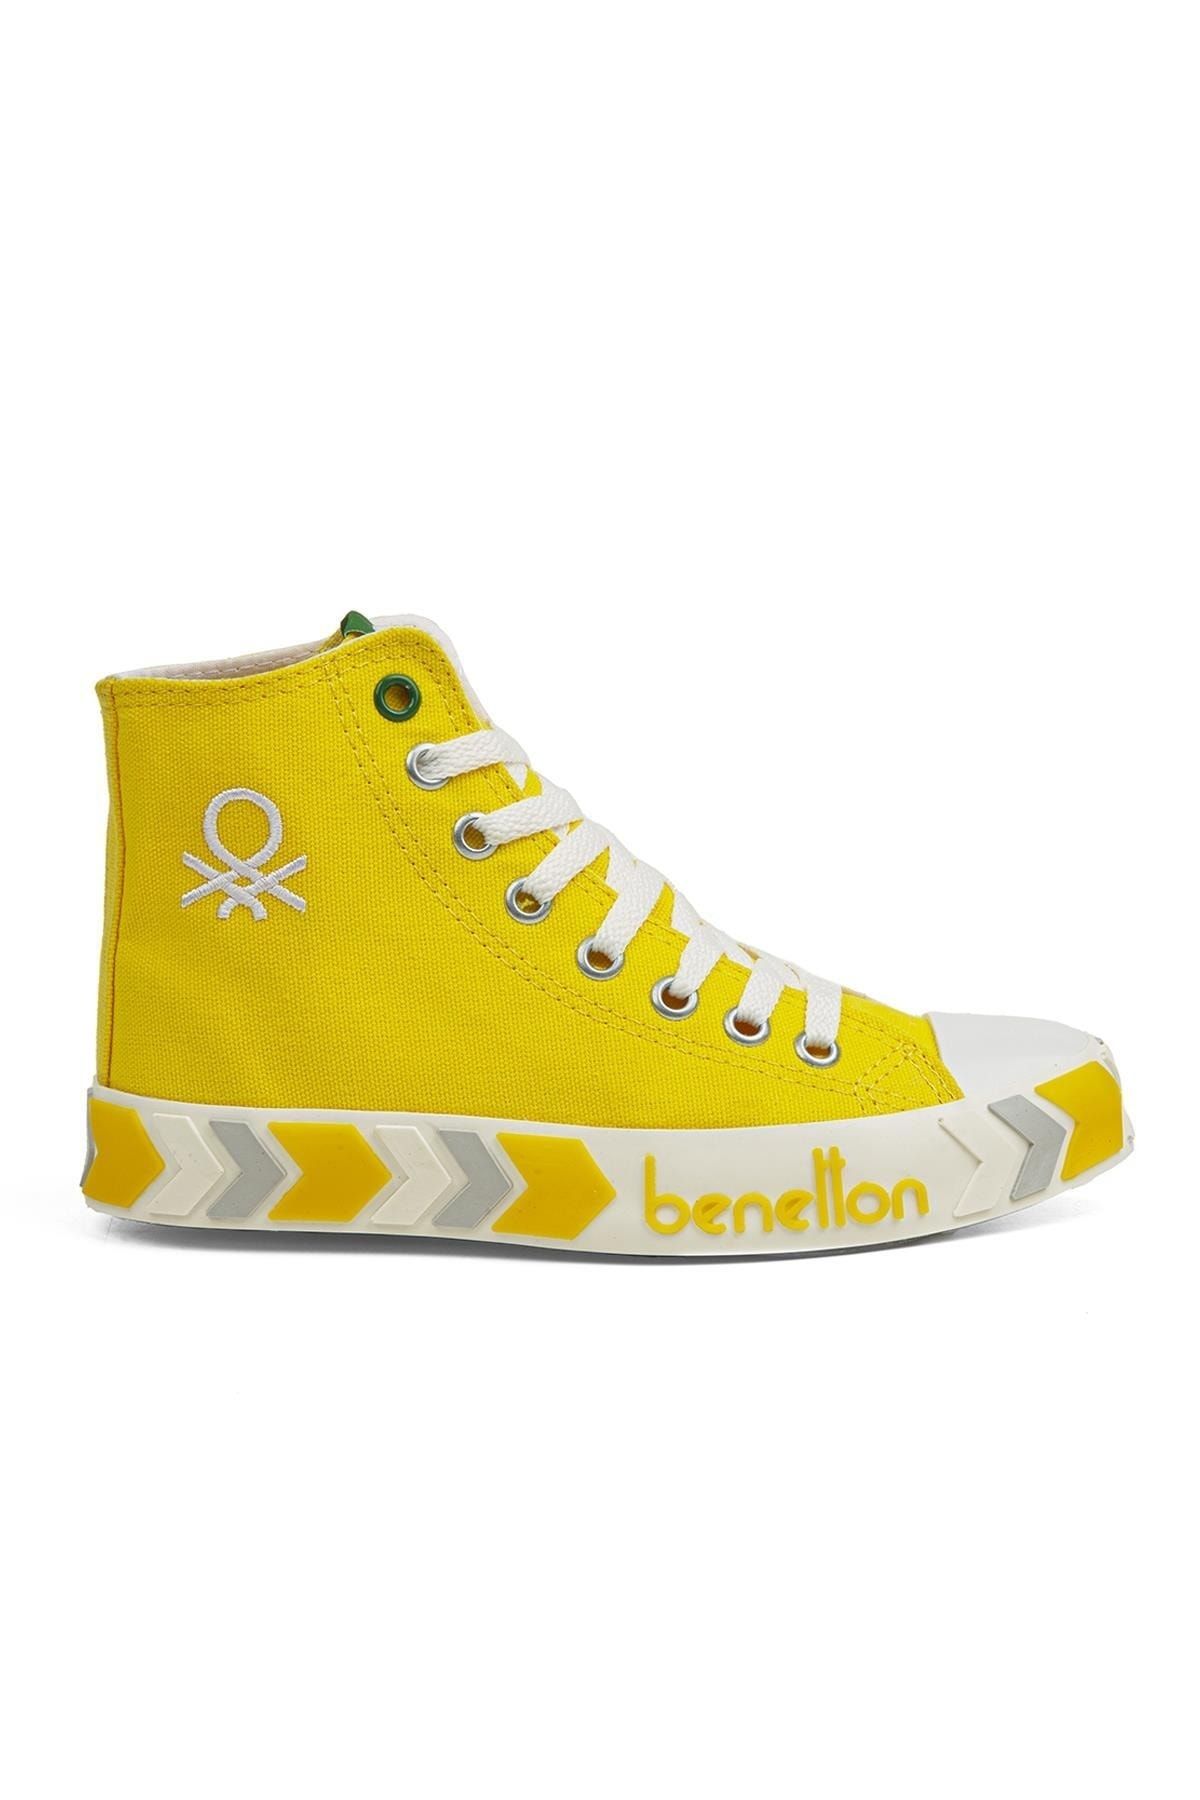 Benetton ® | Bn-30621-3374 Sari - Kadın Spor Ayakkabı